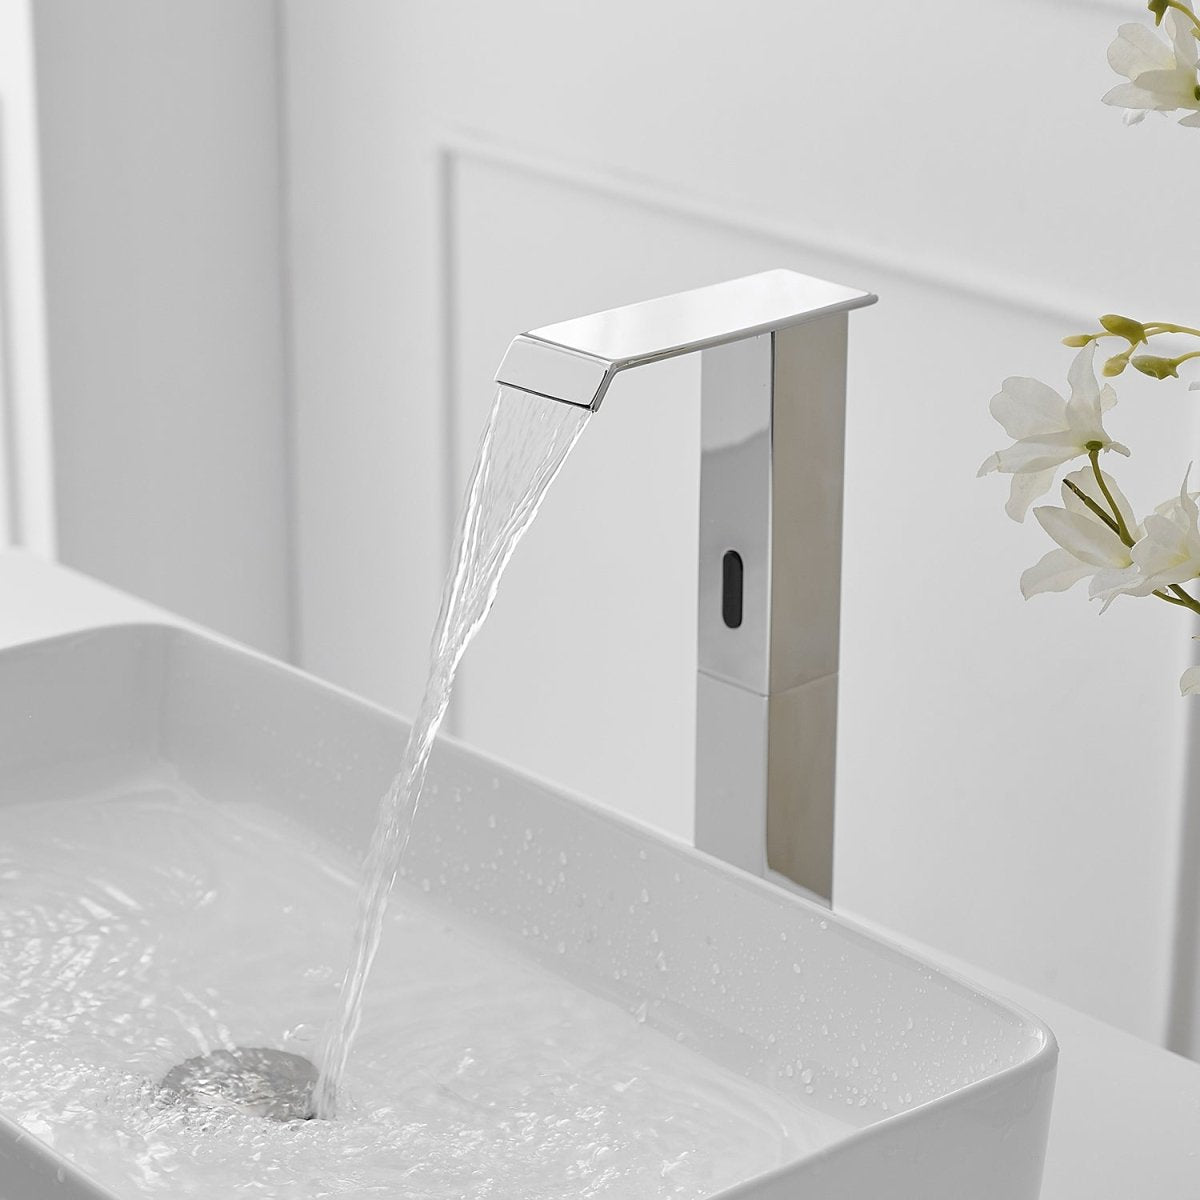 DC Automatic Sensor Touchless Bathroom Faucet Chrome - buyfaucet.com